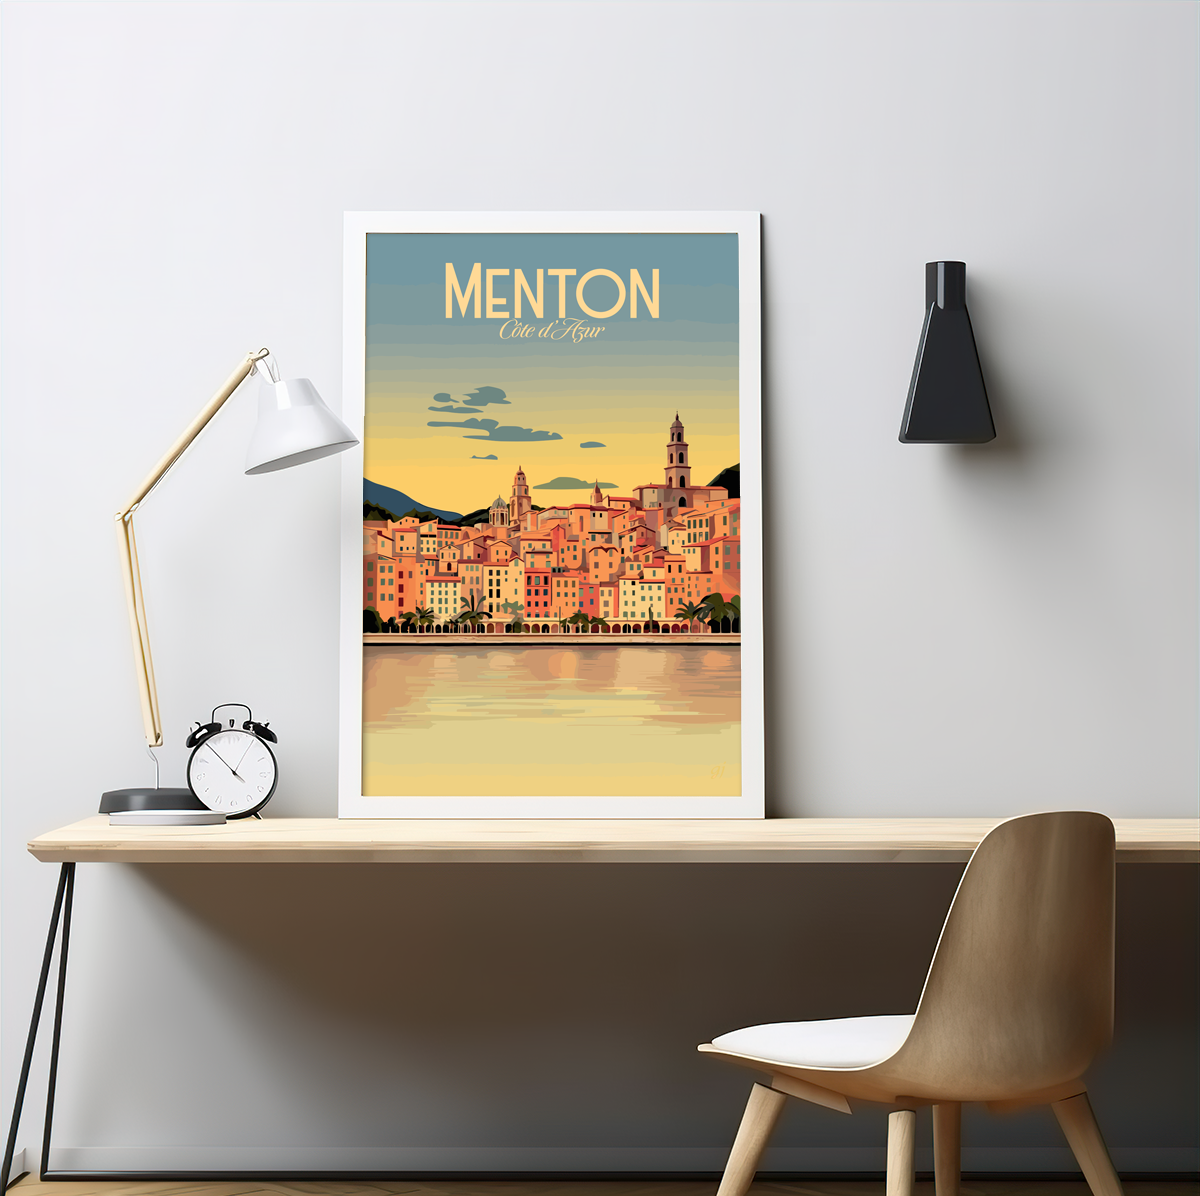 Menton poster by bon voyage design